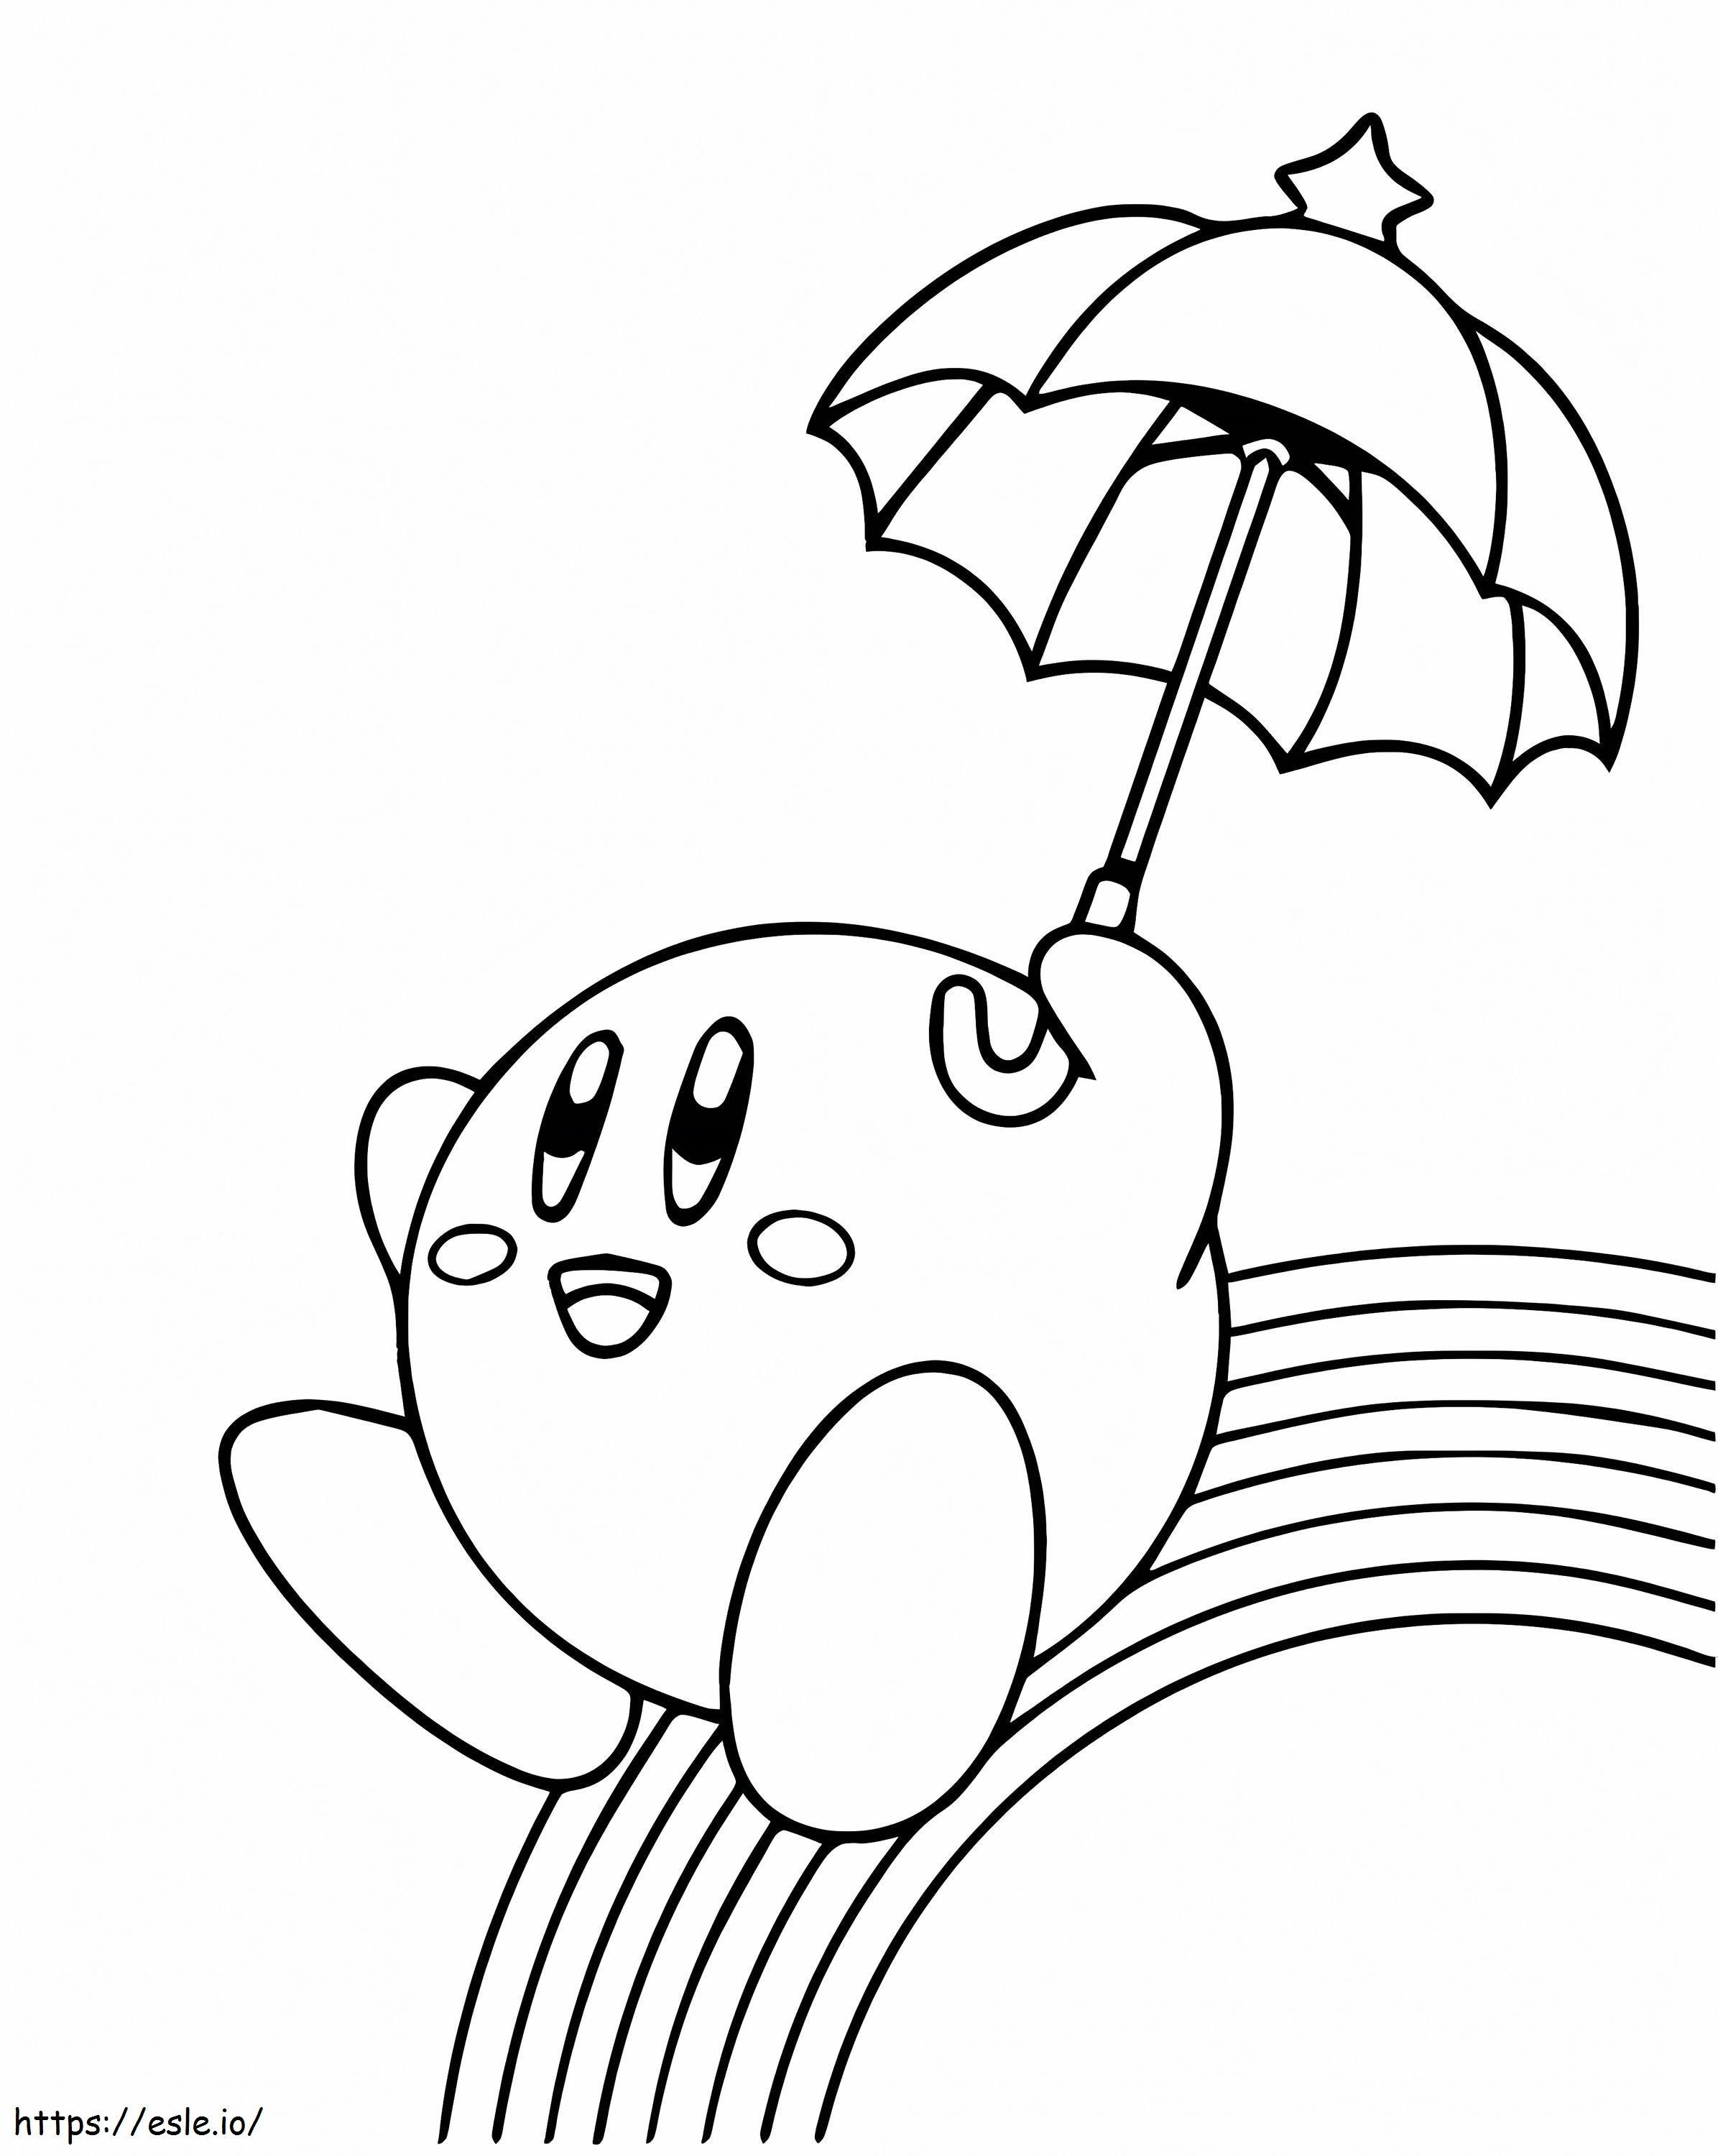 Kirby sosteniendo un paraguas arcoíris para colorear